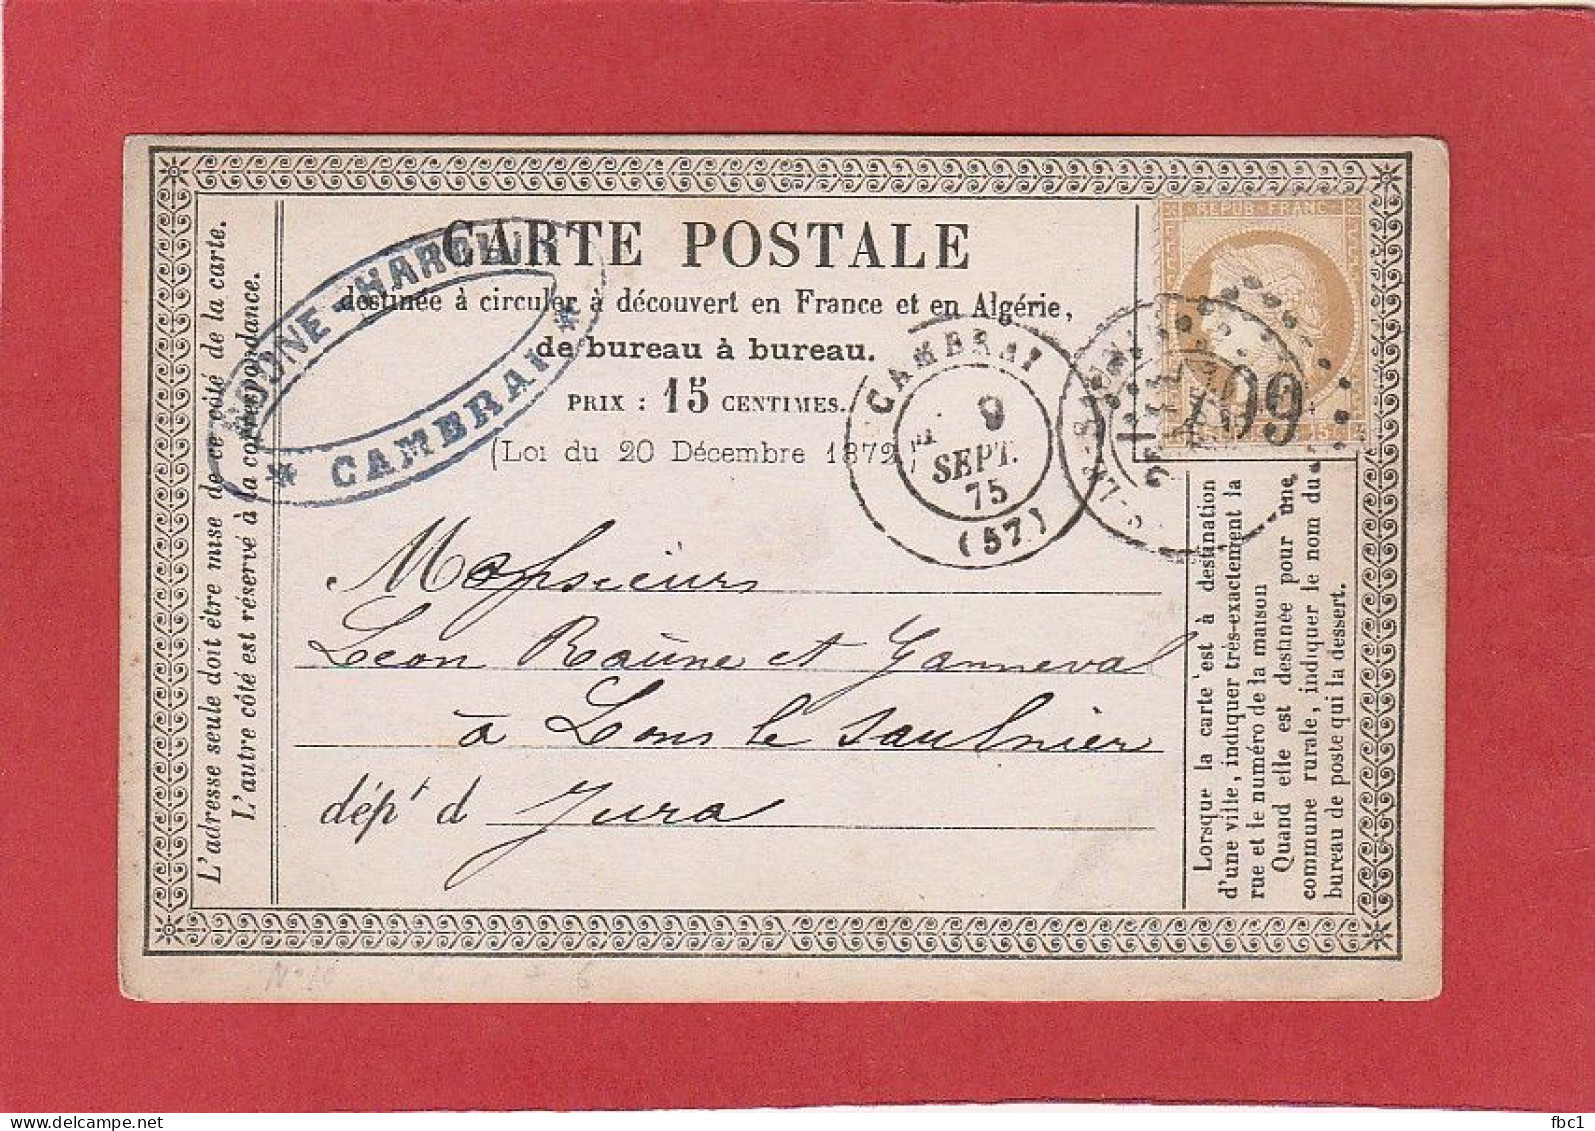 Carte Postale - Nord - Cambrai GC 709 Sur Cérès N°55 15C Vers Lons Le Saunier 1875 - Precursor Cards